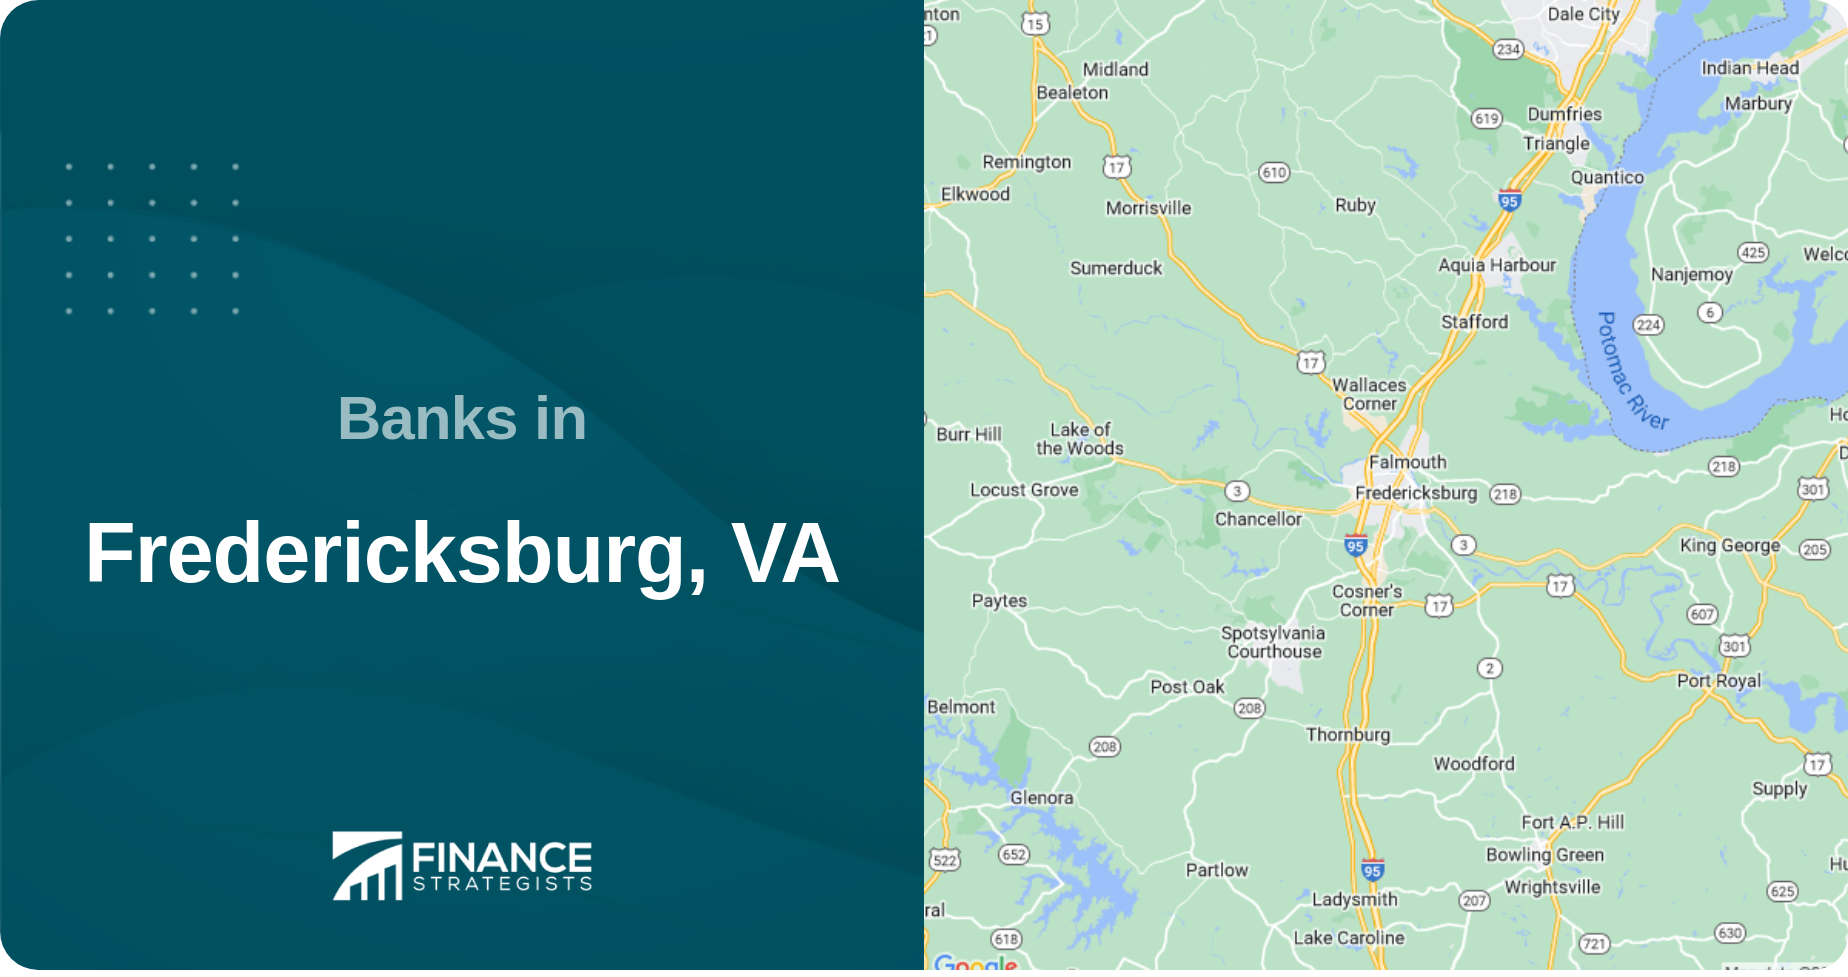 Banks in Fredericksburg, VA